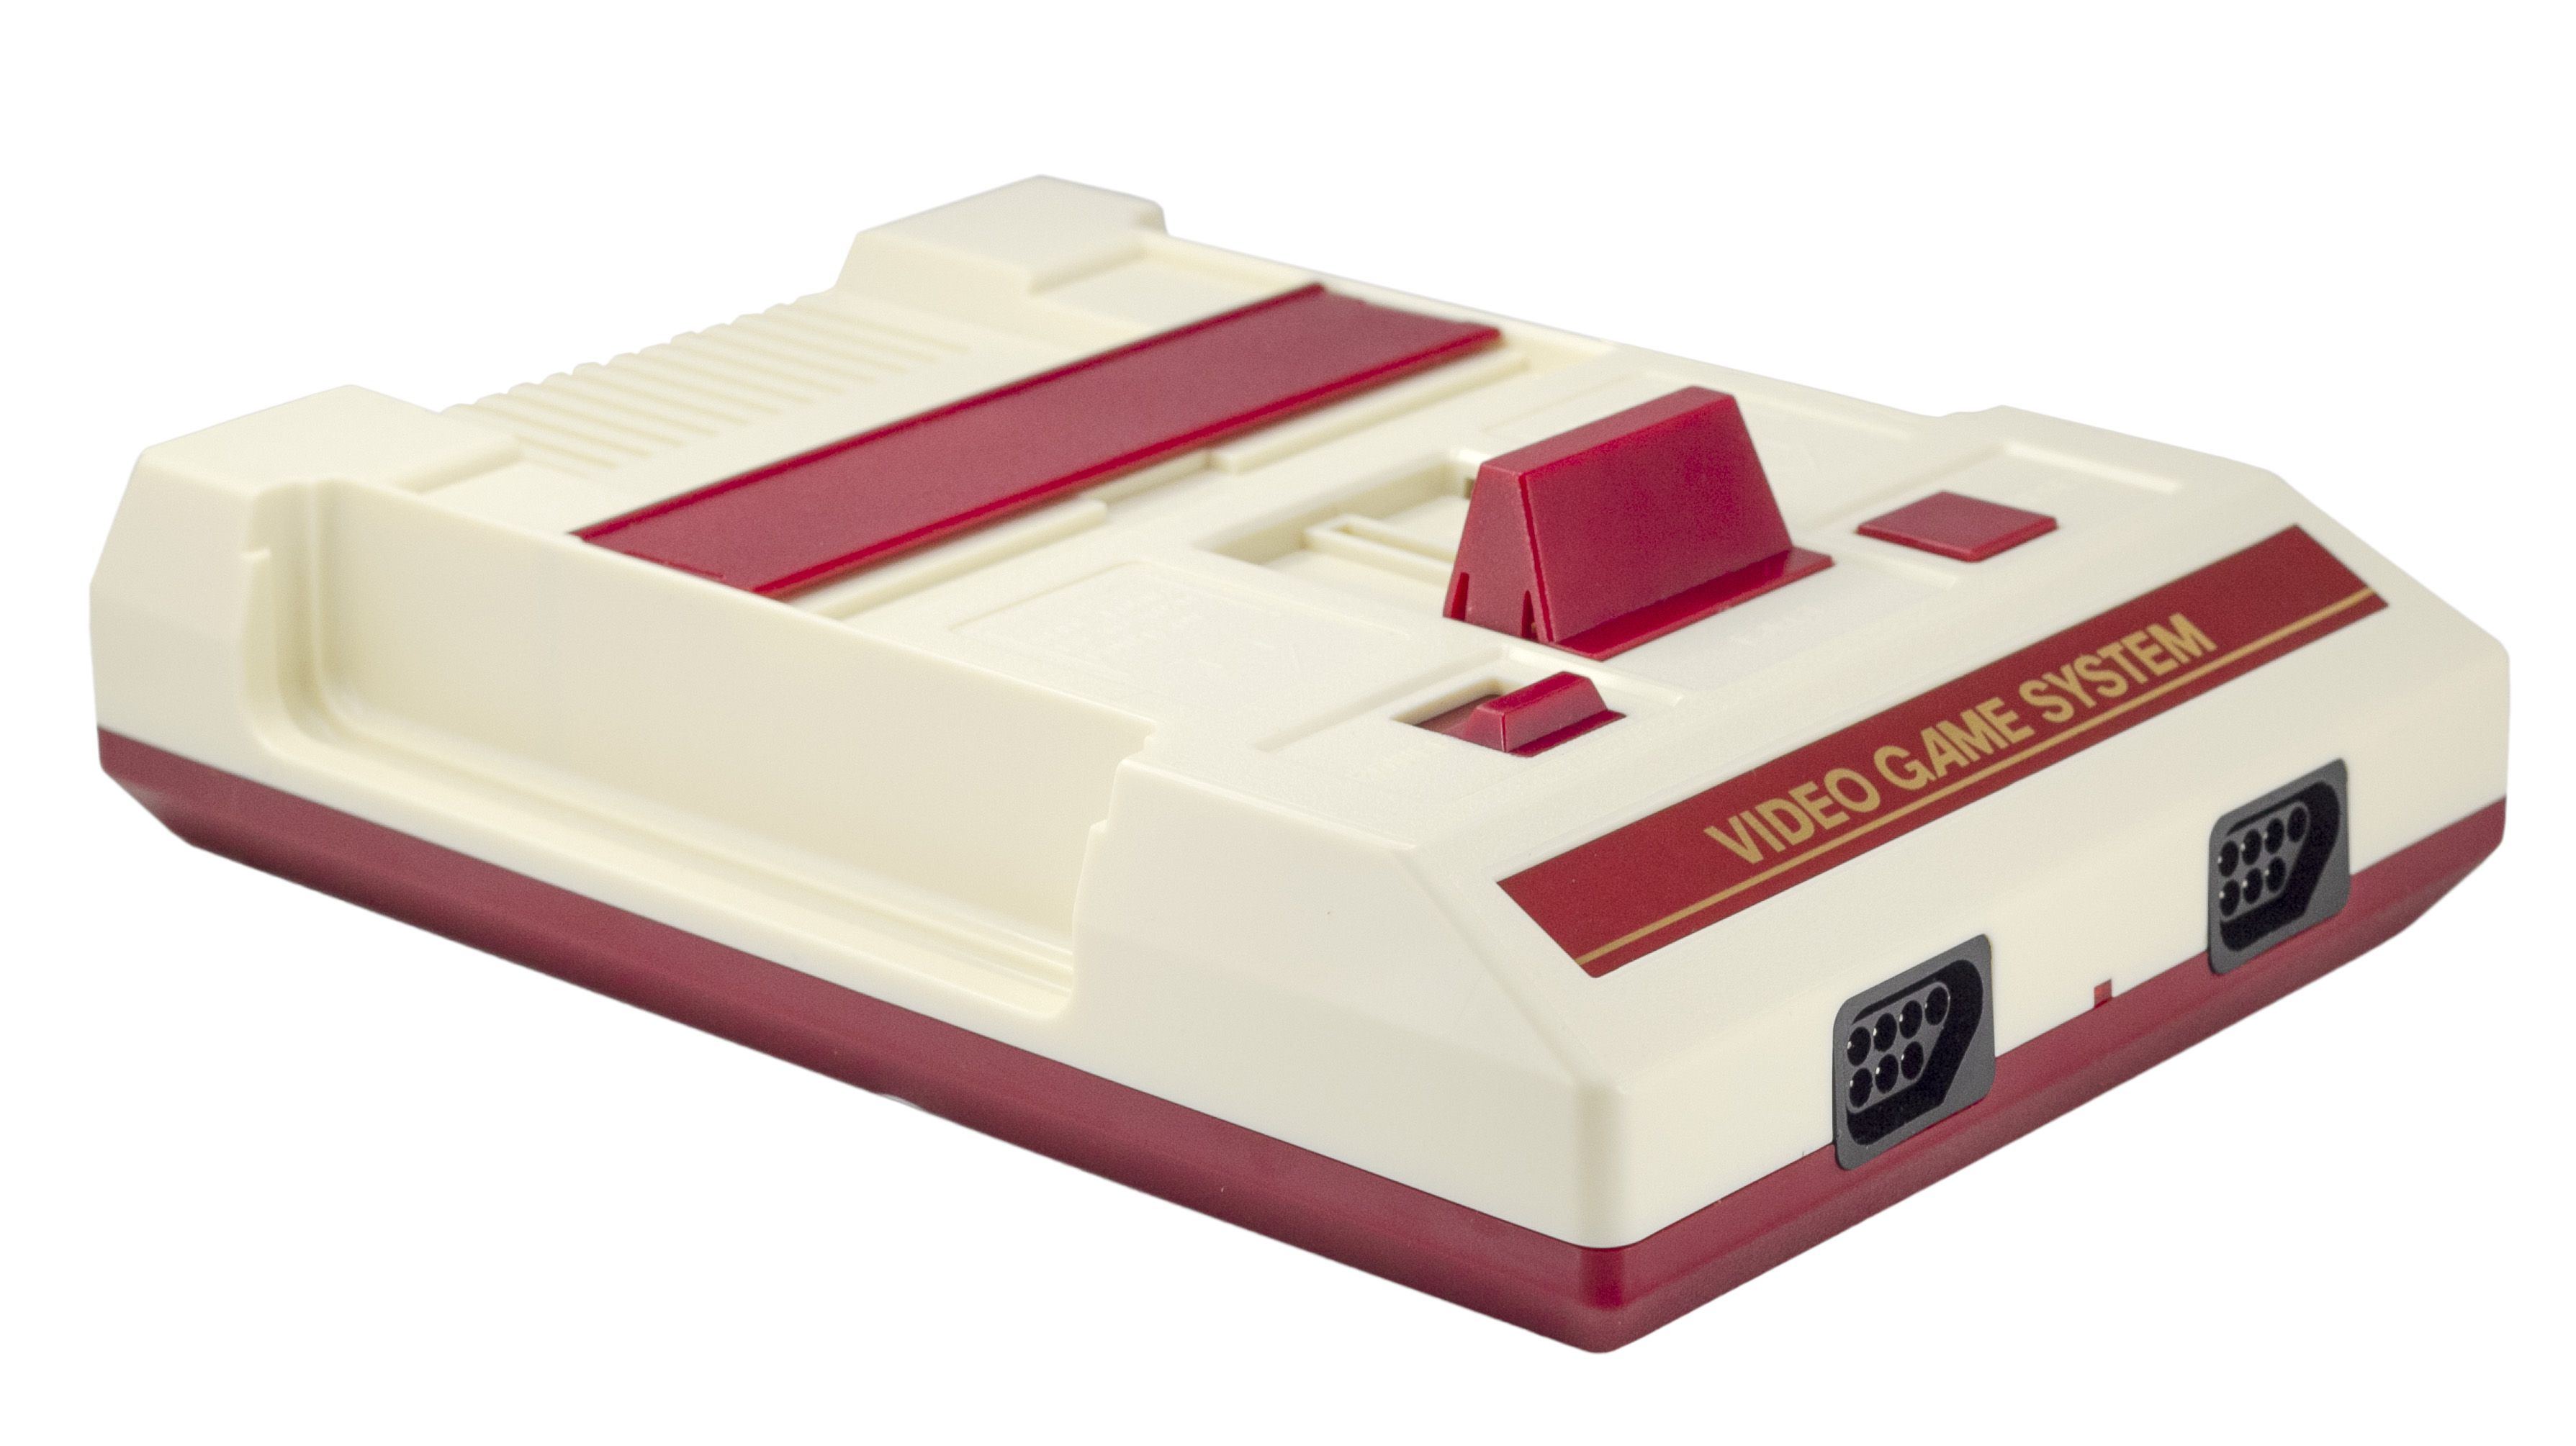 Игровая консоль Retro Genesis 8 Bit Lasergun + 303 игры + 2 проводных джойстика + пистолет Заппер